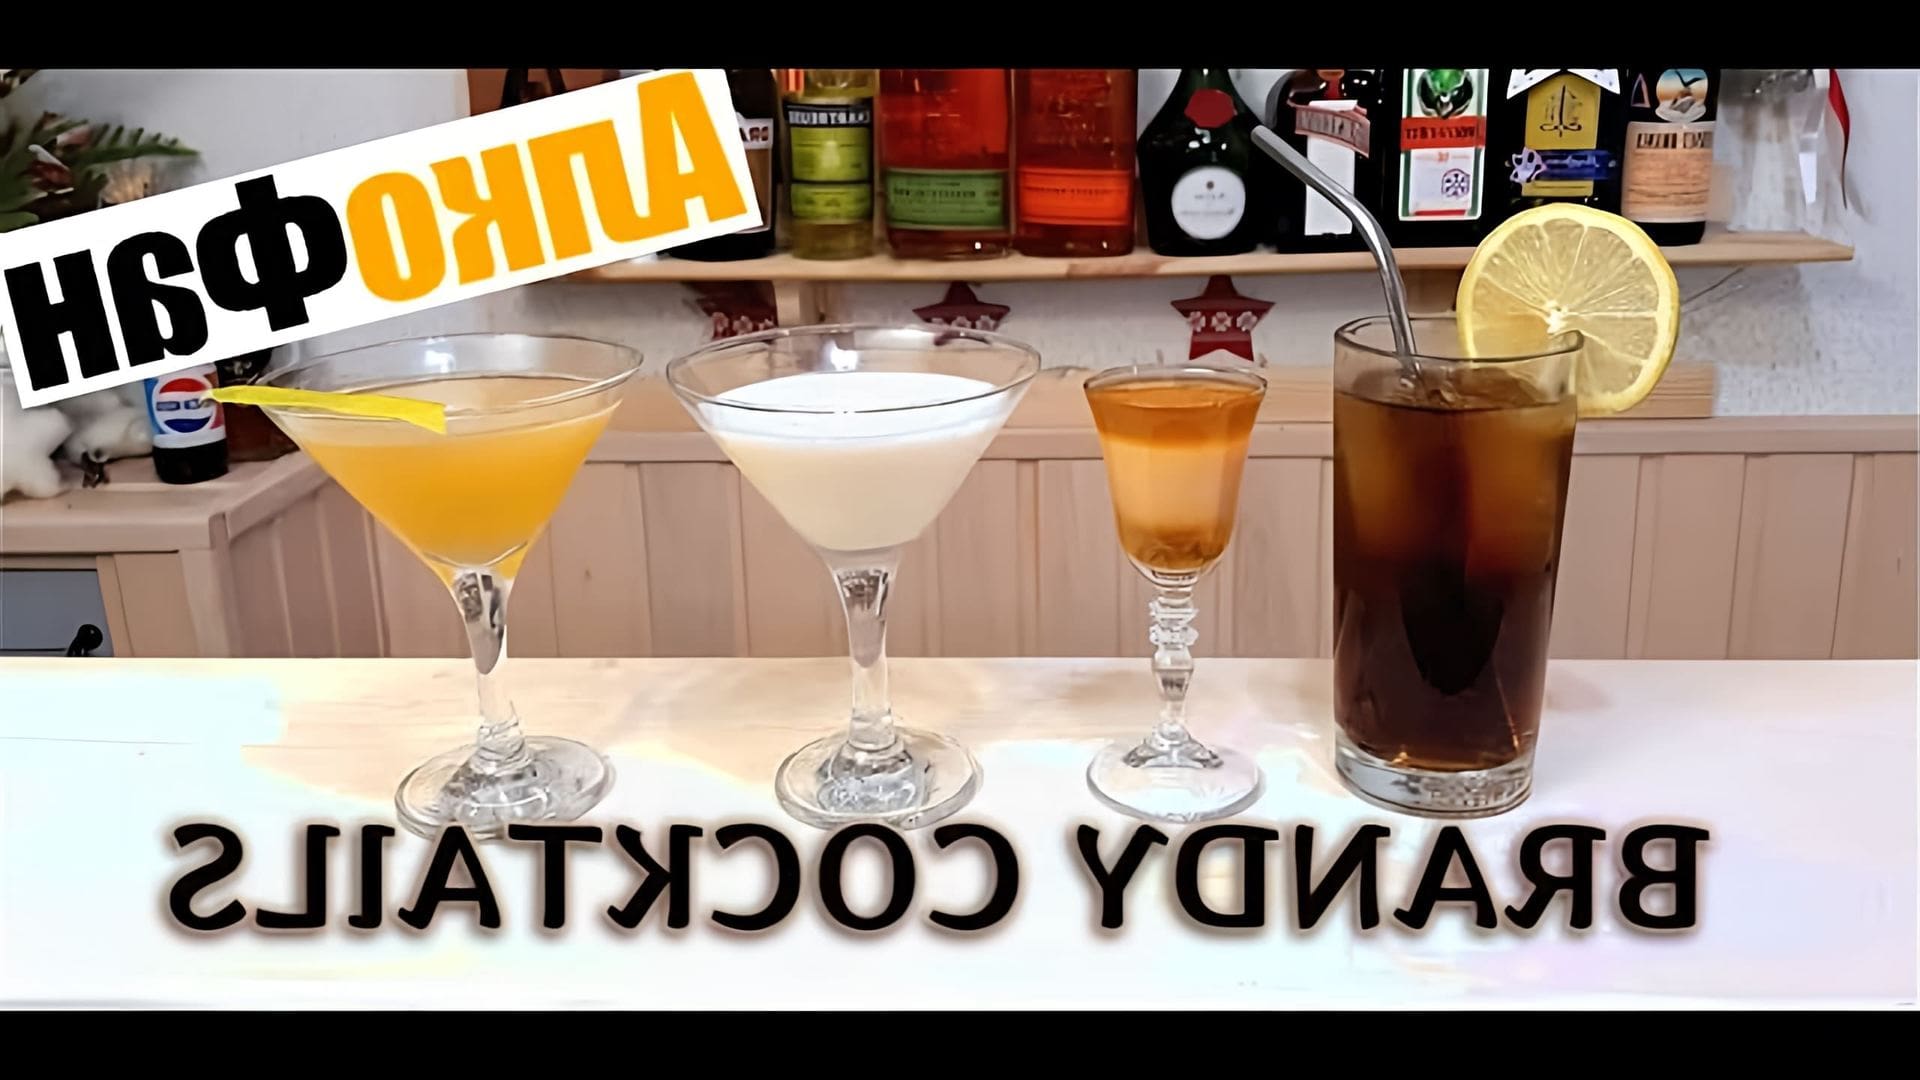 В этом видео показаны 4 рецепта коктейлей с коньяком, которые можно приготовить дома